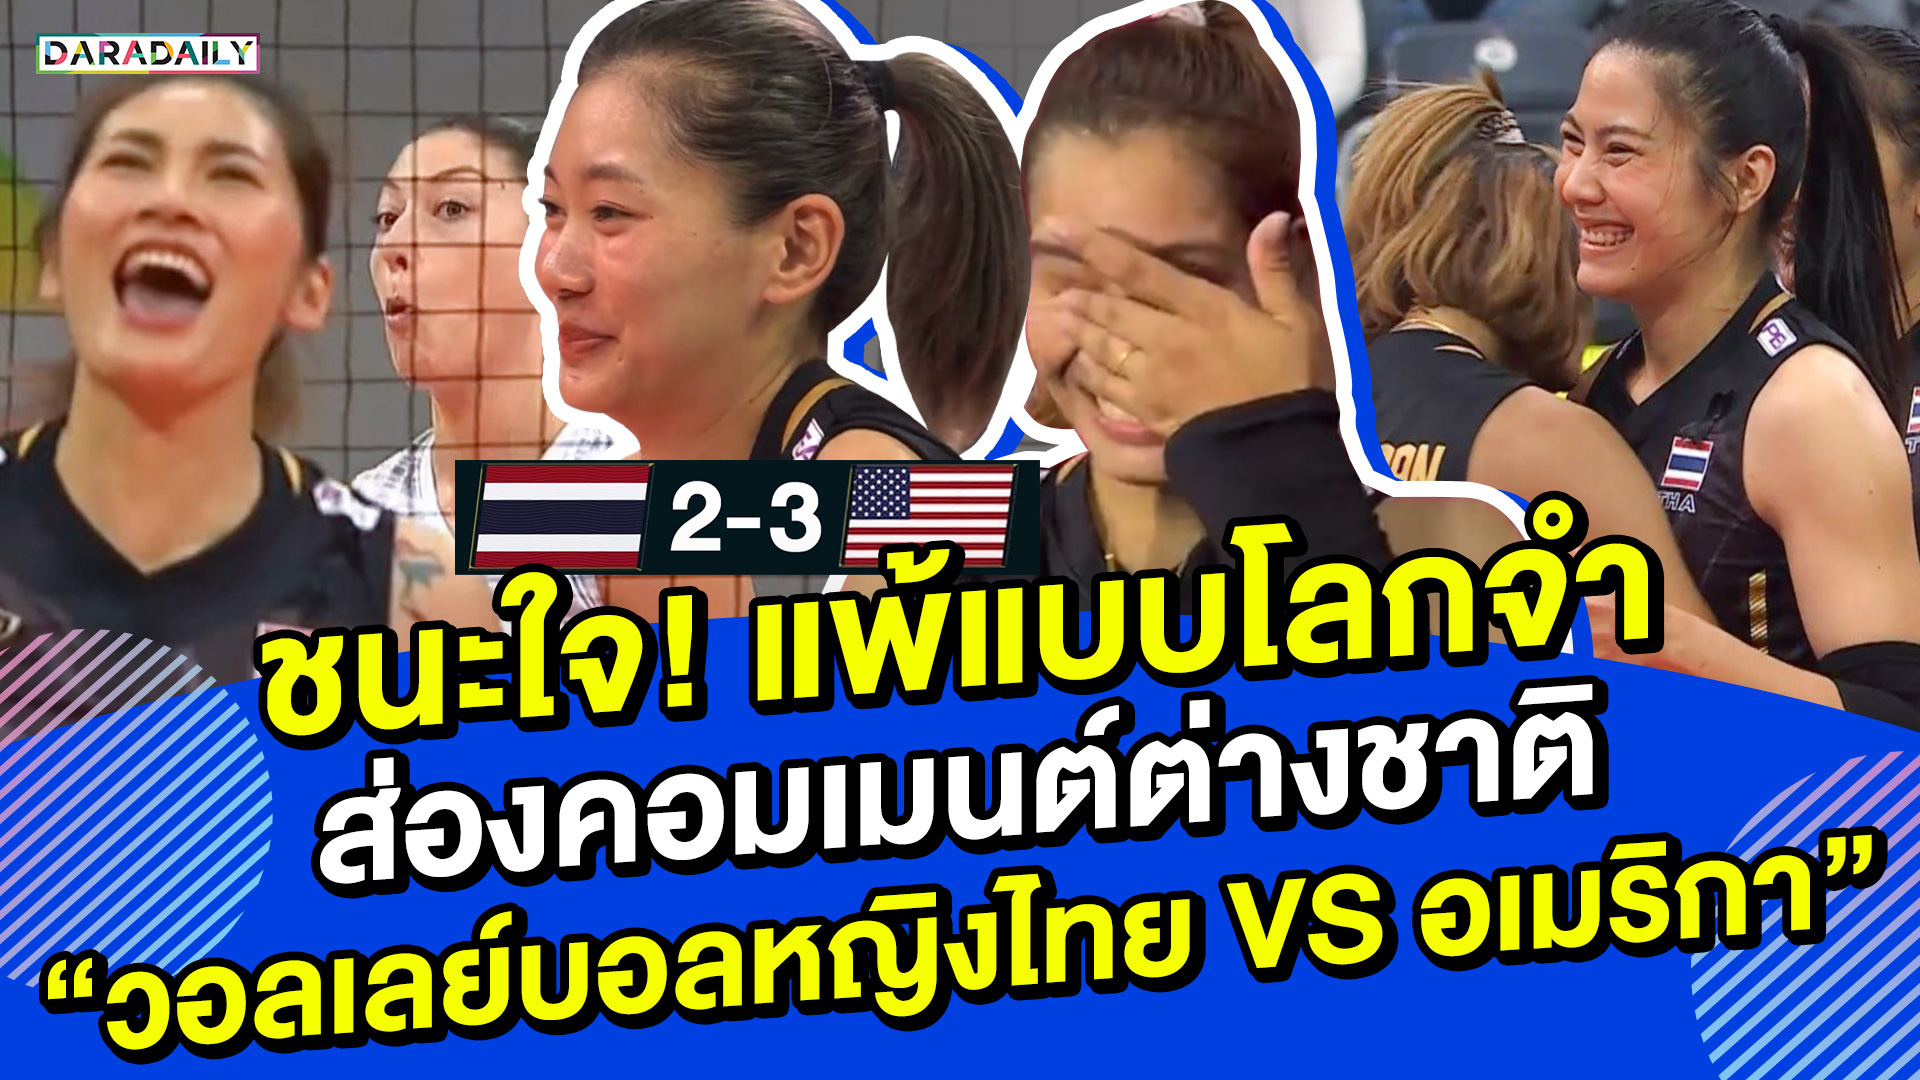 ชนะใจ! แพ้แบบโลกจำ ส่องคอมเมนต์ต่างชาติ แมชต์ “วอลเลย์บอลหญิงไทย VS อเมริกา”